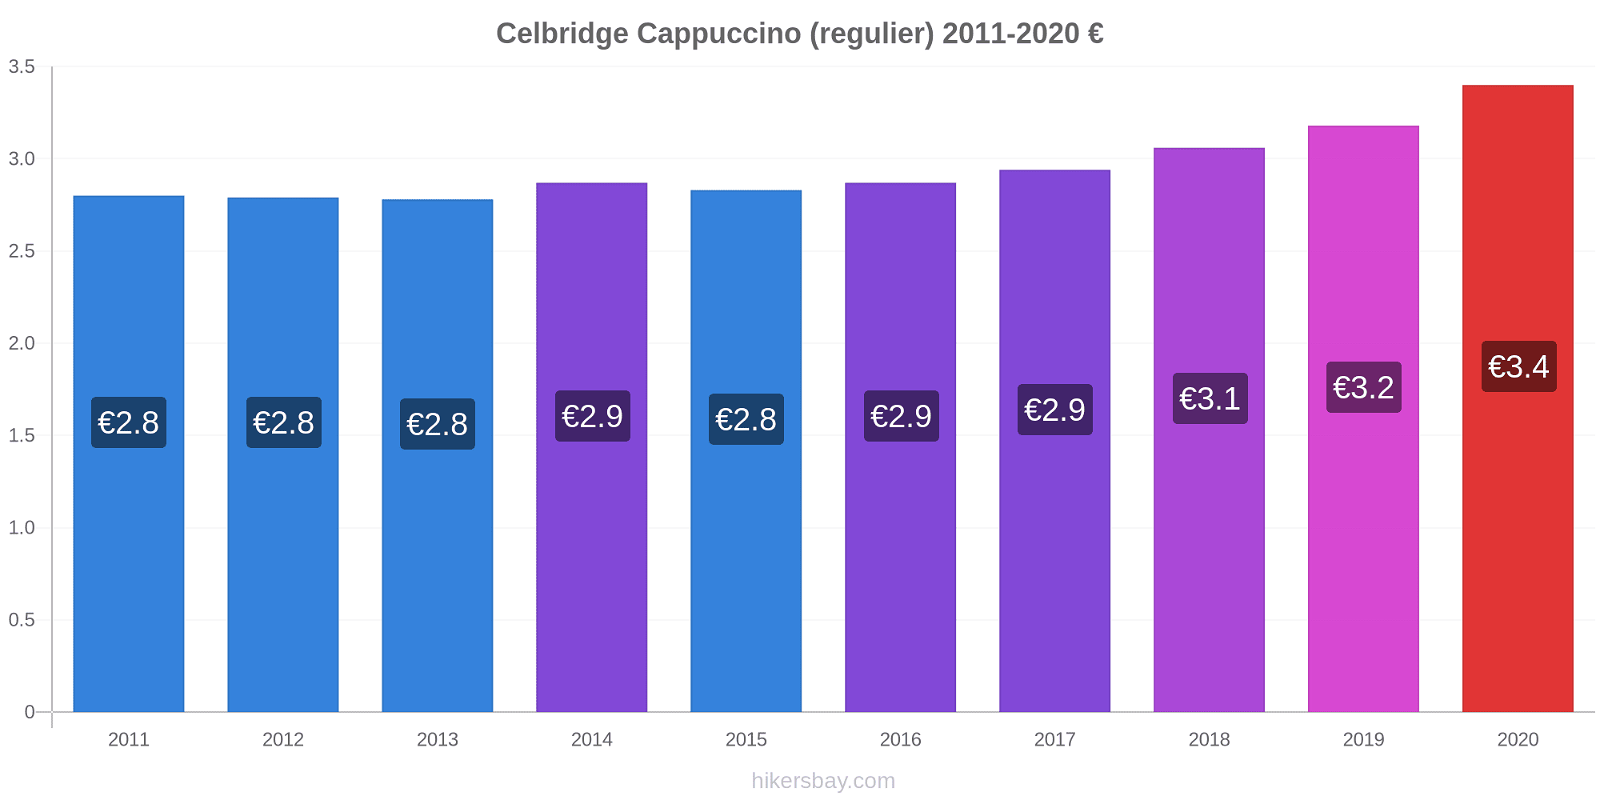 Celbridge prijswijzigingen Cappuccino (regelmatige) hikersbay.com